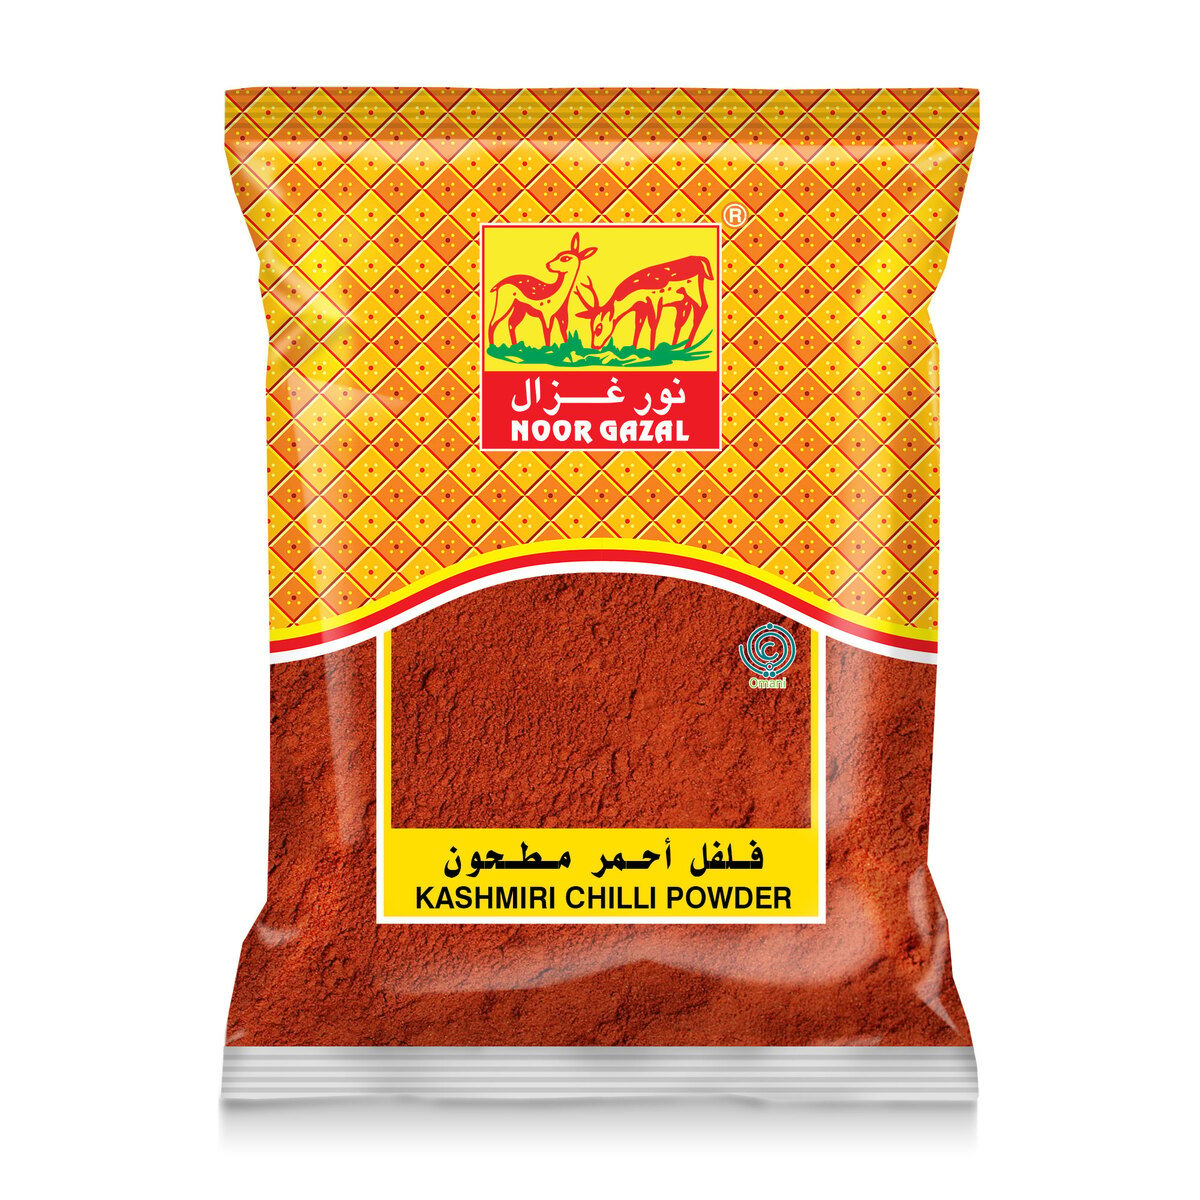 Noor Gazal Kashmiri Chilli Powder 400g